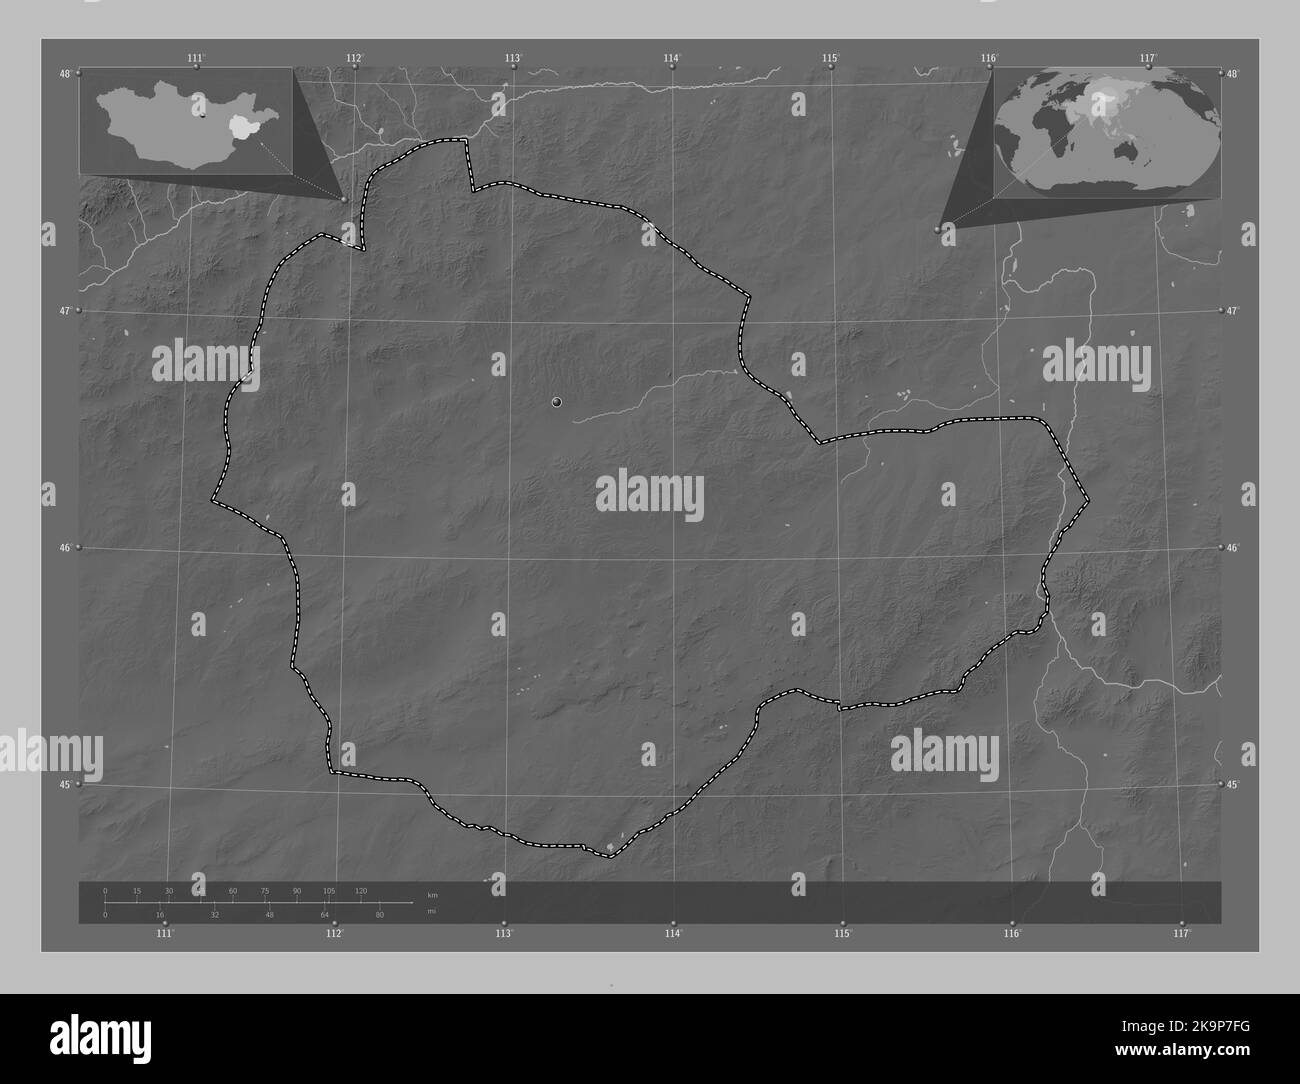 Suhbaatar, province de Mongolie. Carte d'altitude en niveaux de gris avec lacs et rivières. Cartes d'emplacement auxiliaire d'angle Banque D'Images